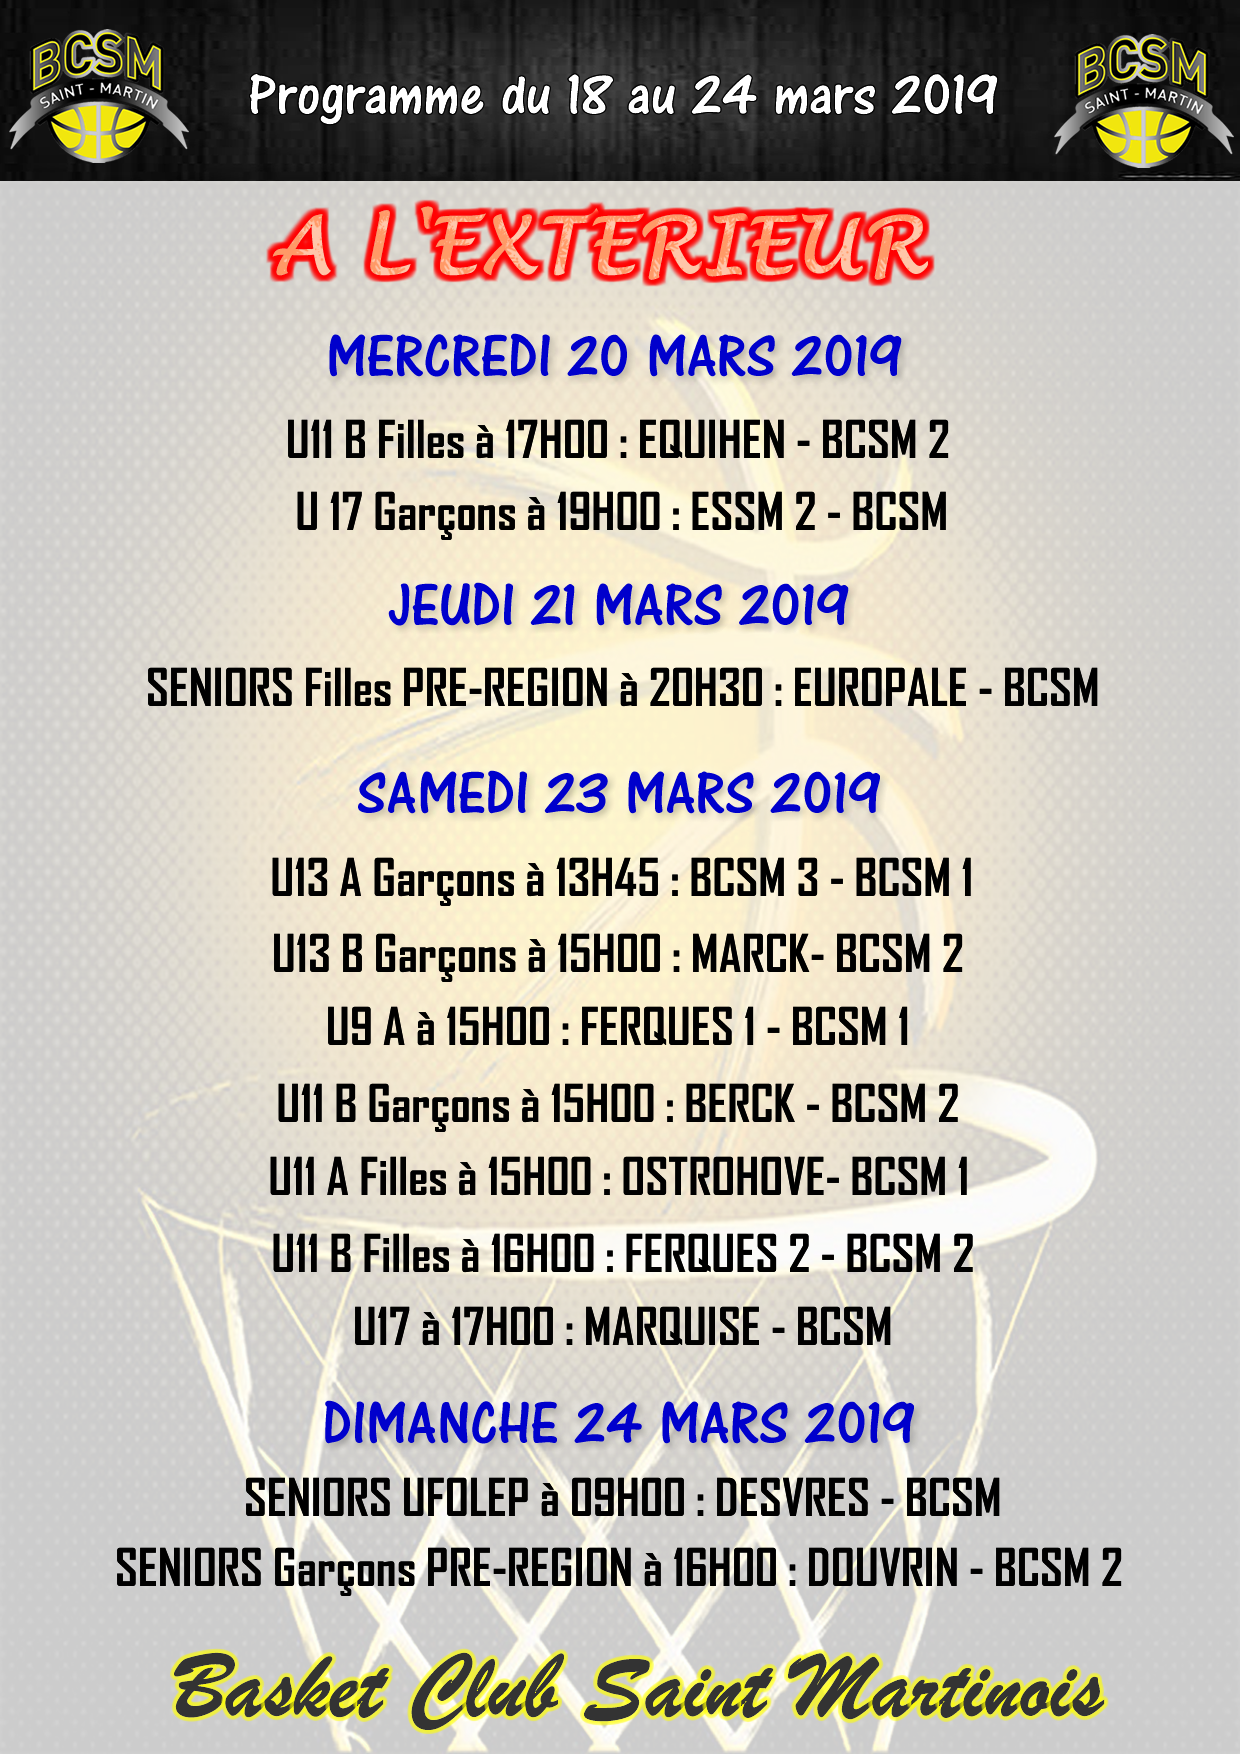 PROGRAMME BCSM DU 18 AU 24 MARS 2019 A L'EXTERIEUR.png